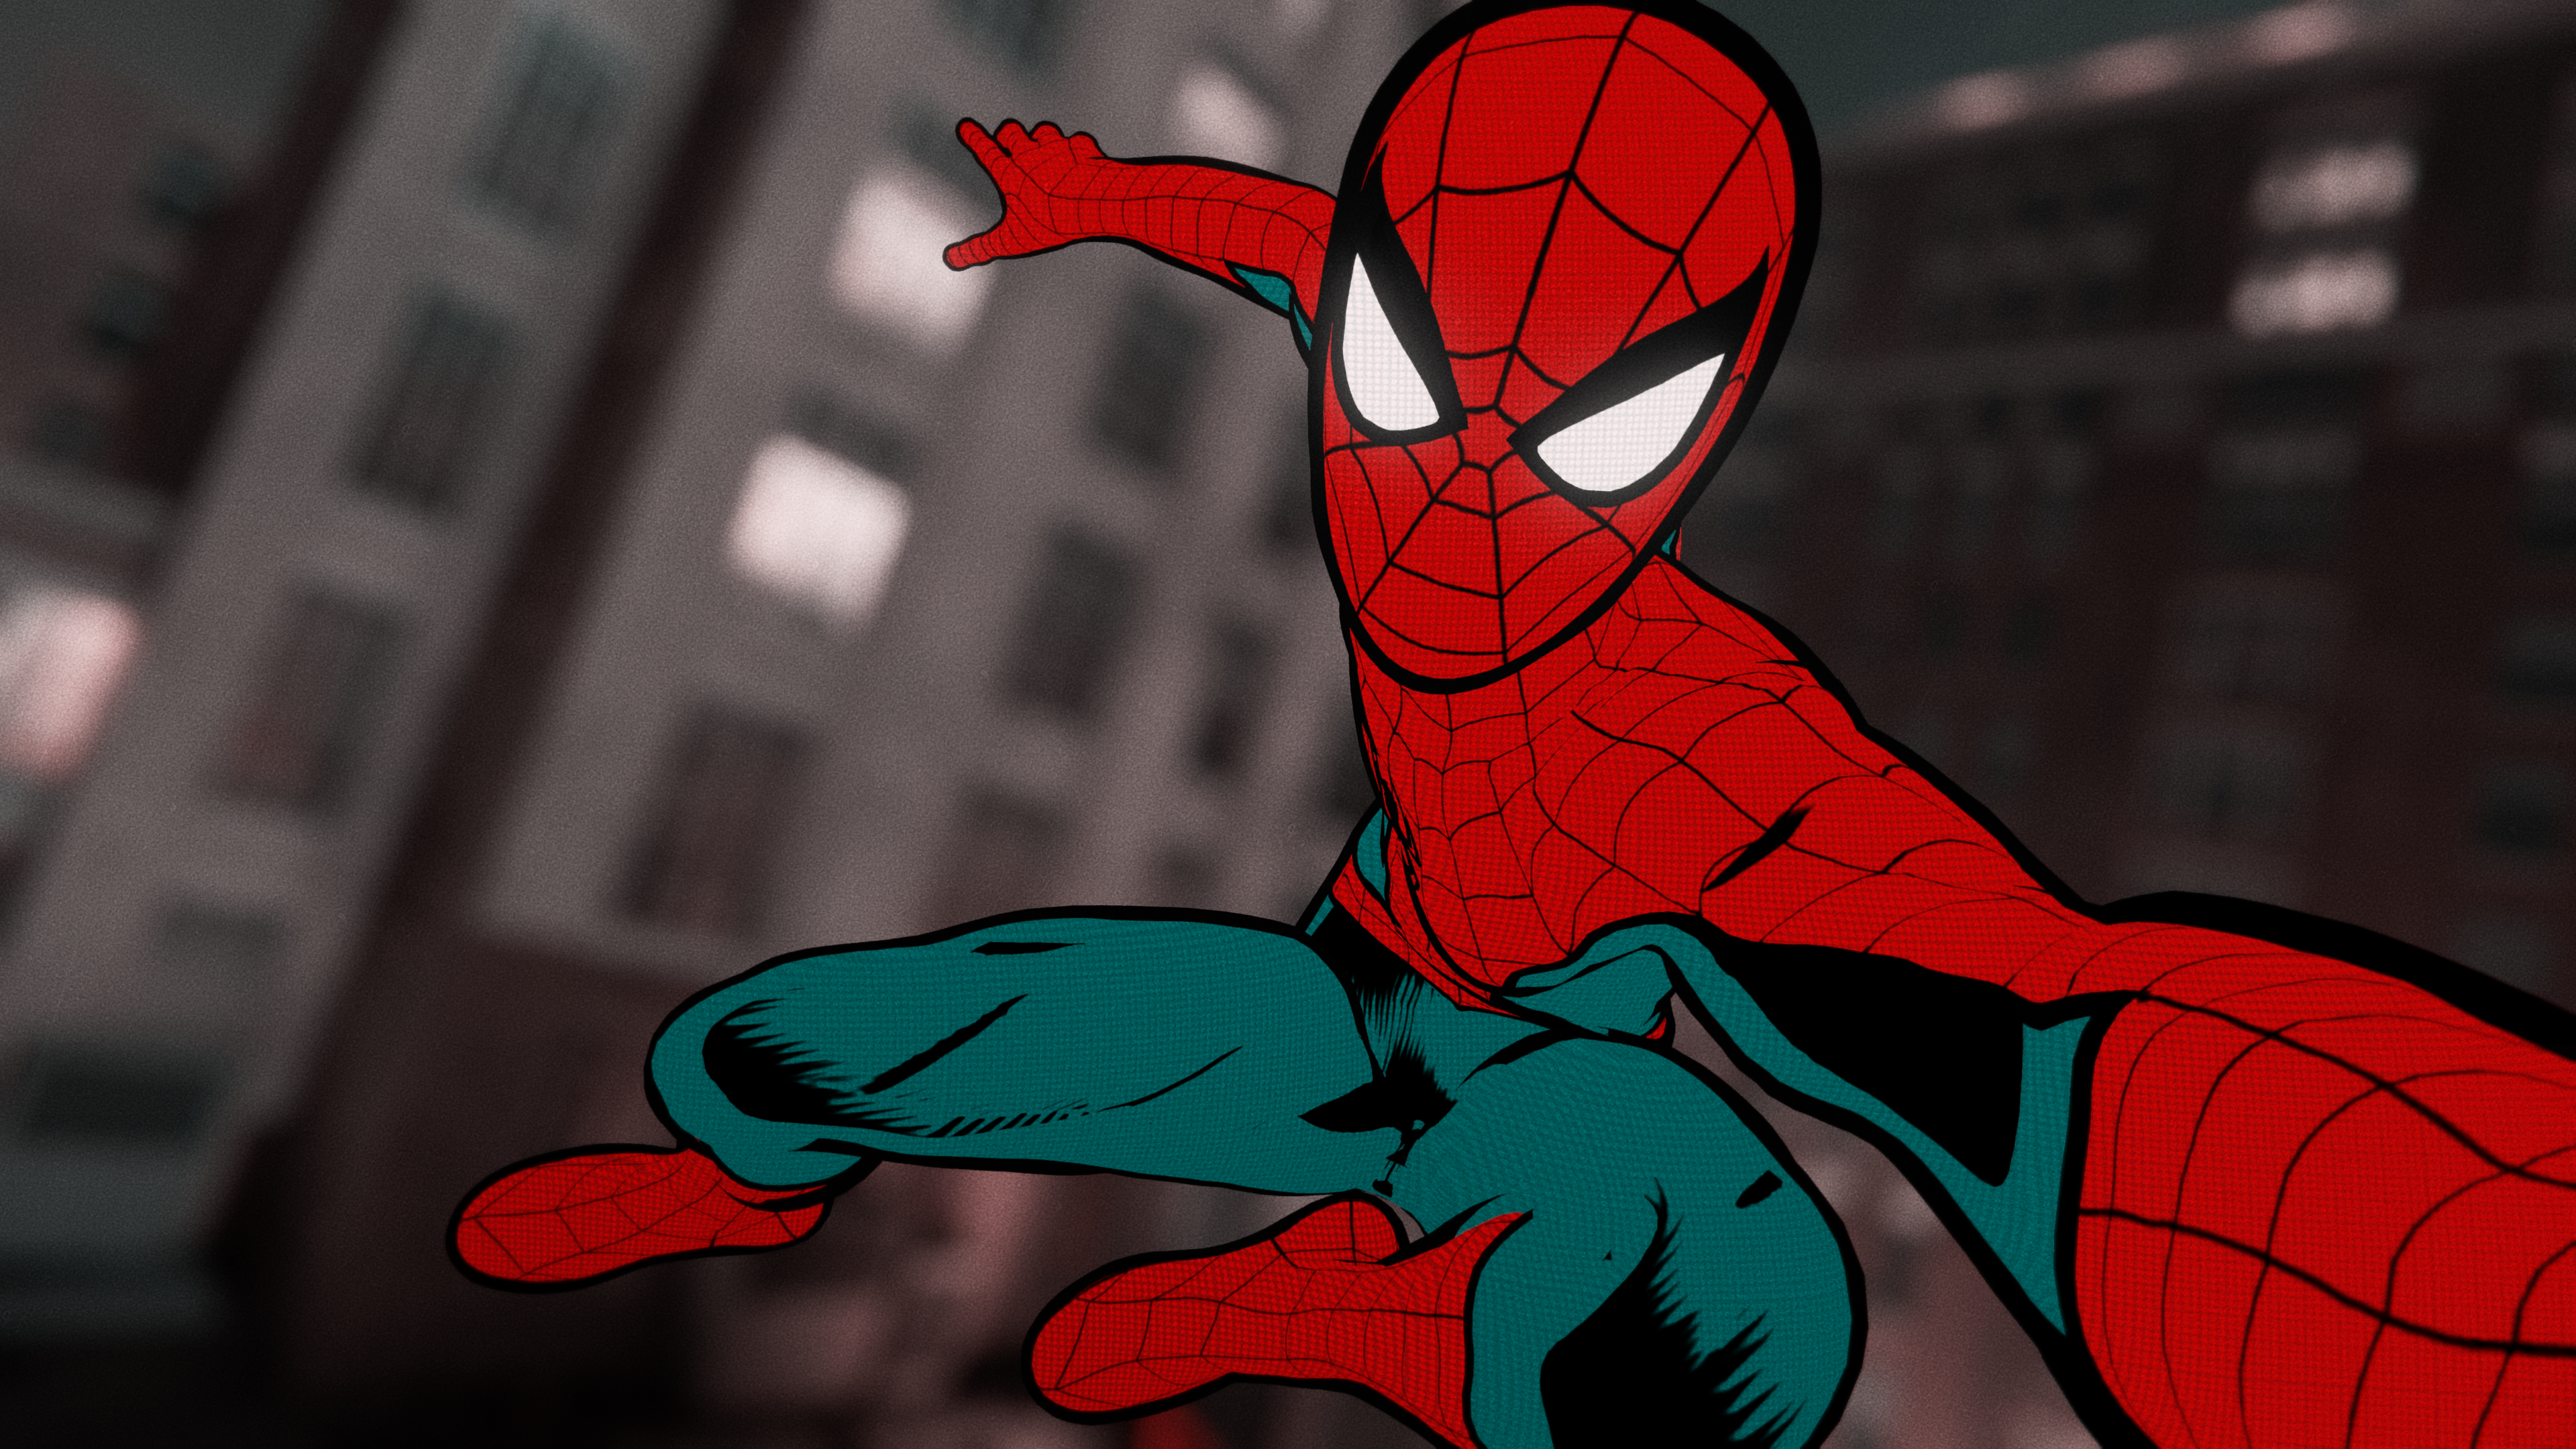 General 3840x2160 Spider-Man superhero comic art artwork